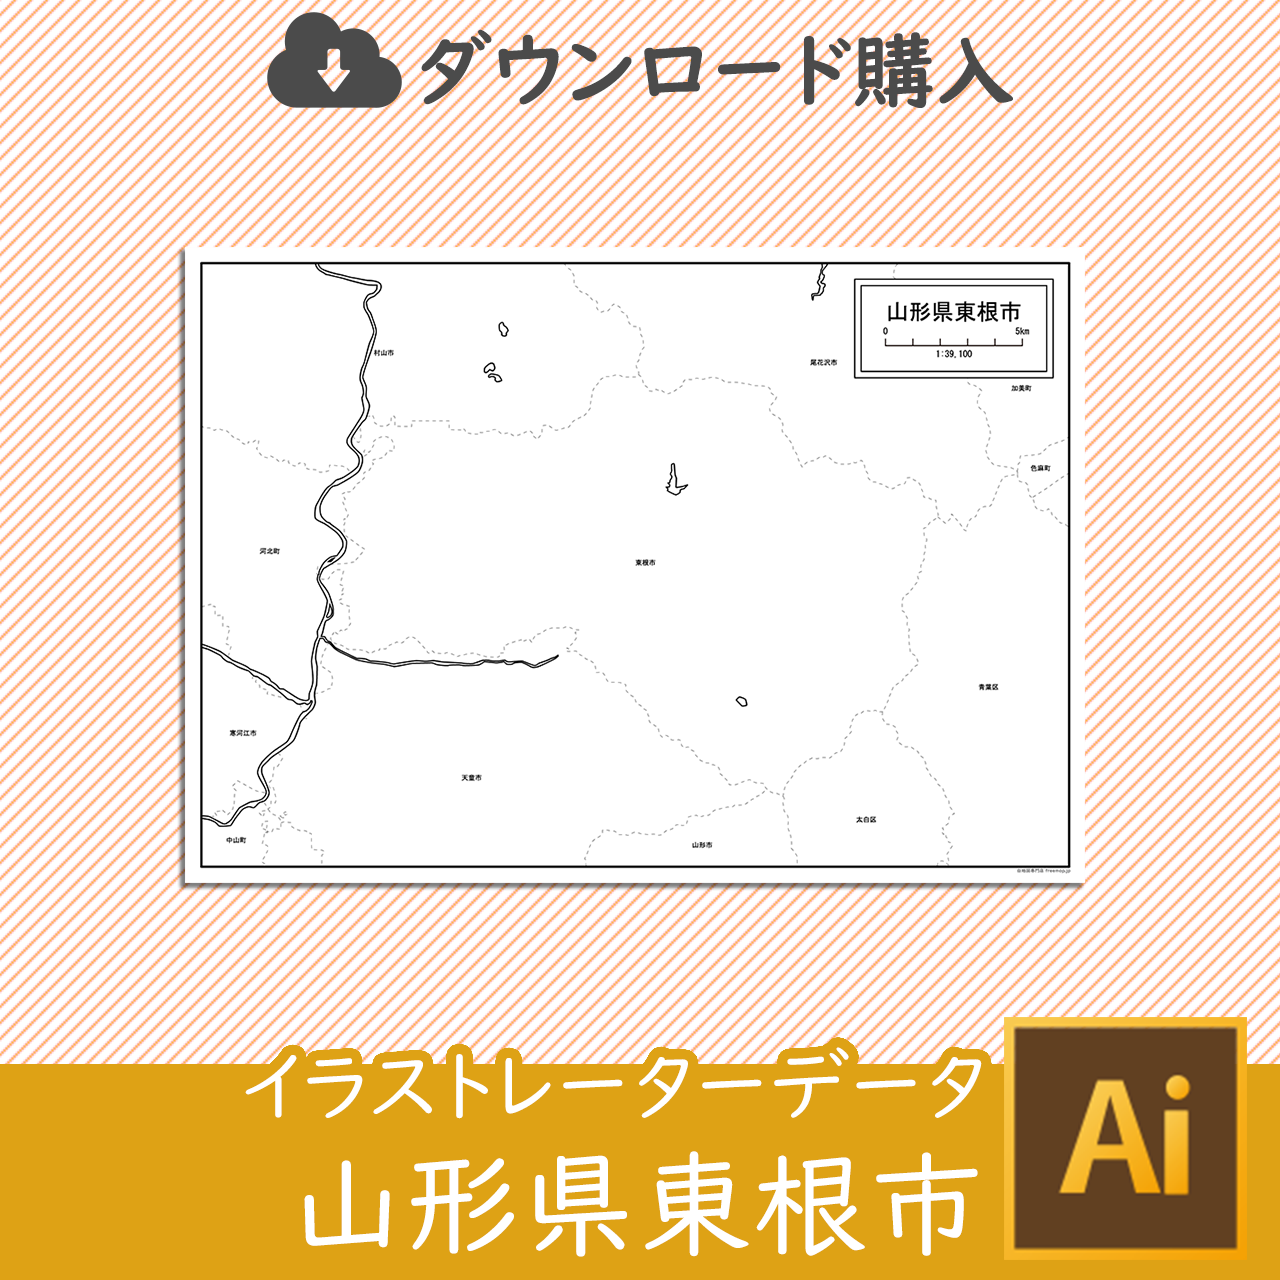 東根市のaiデータのサムネイル画像